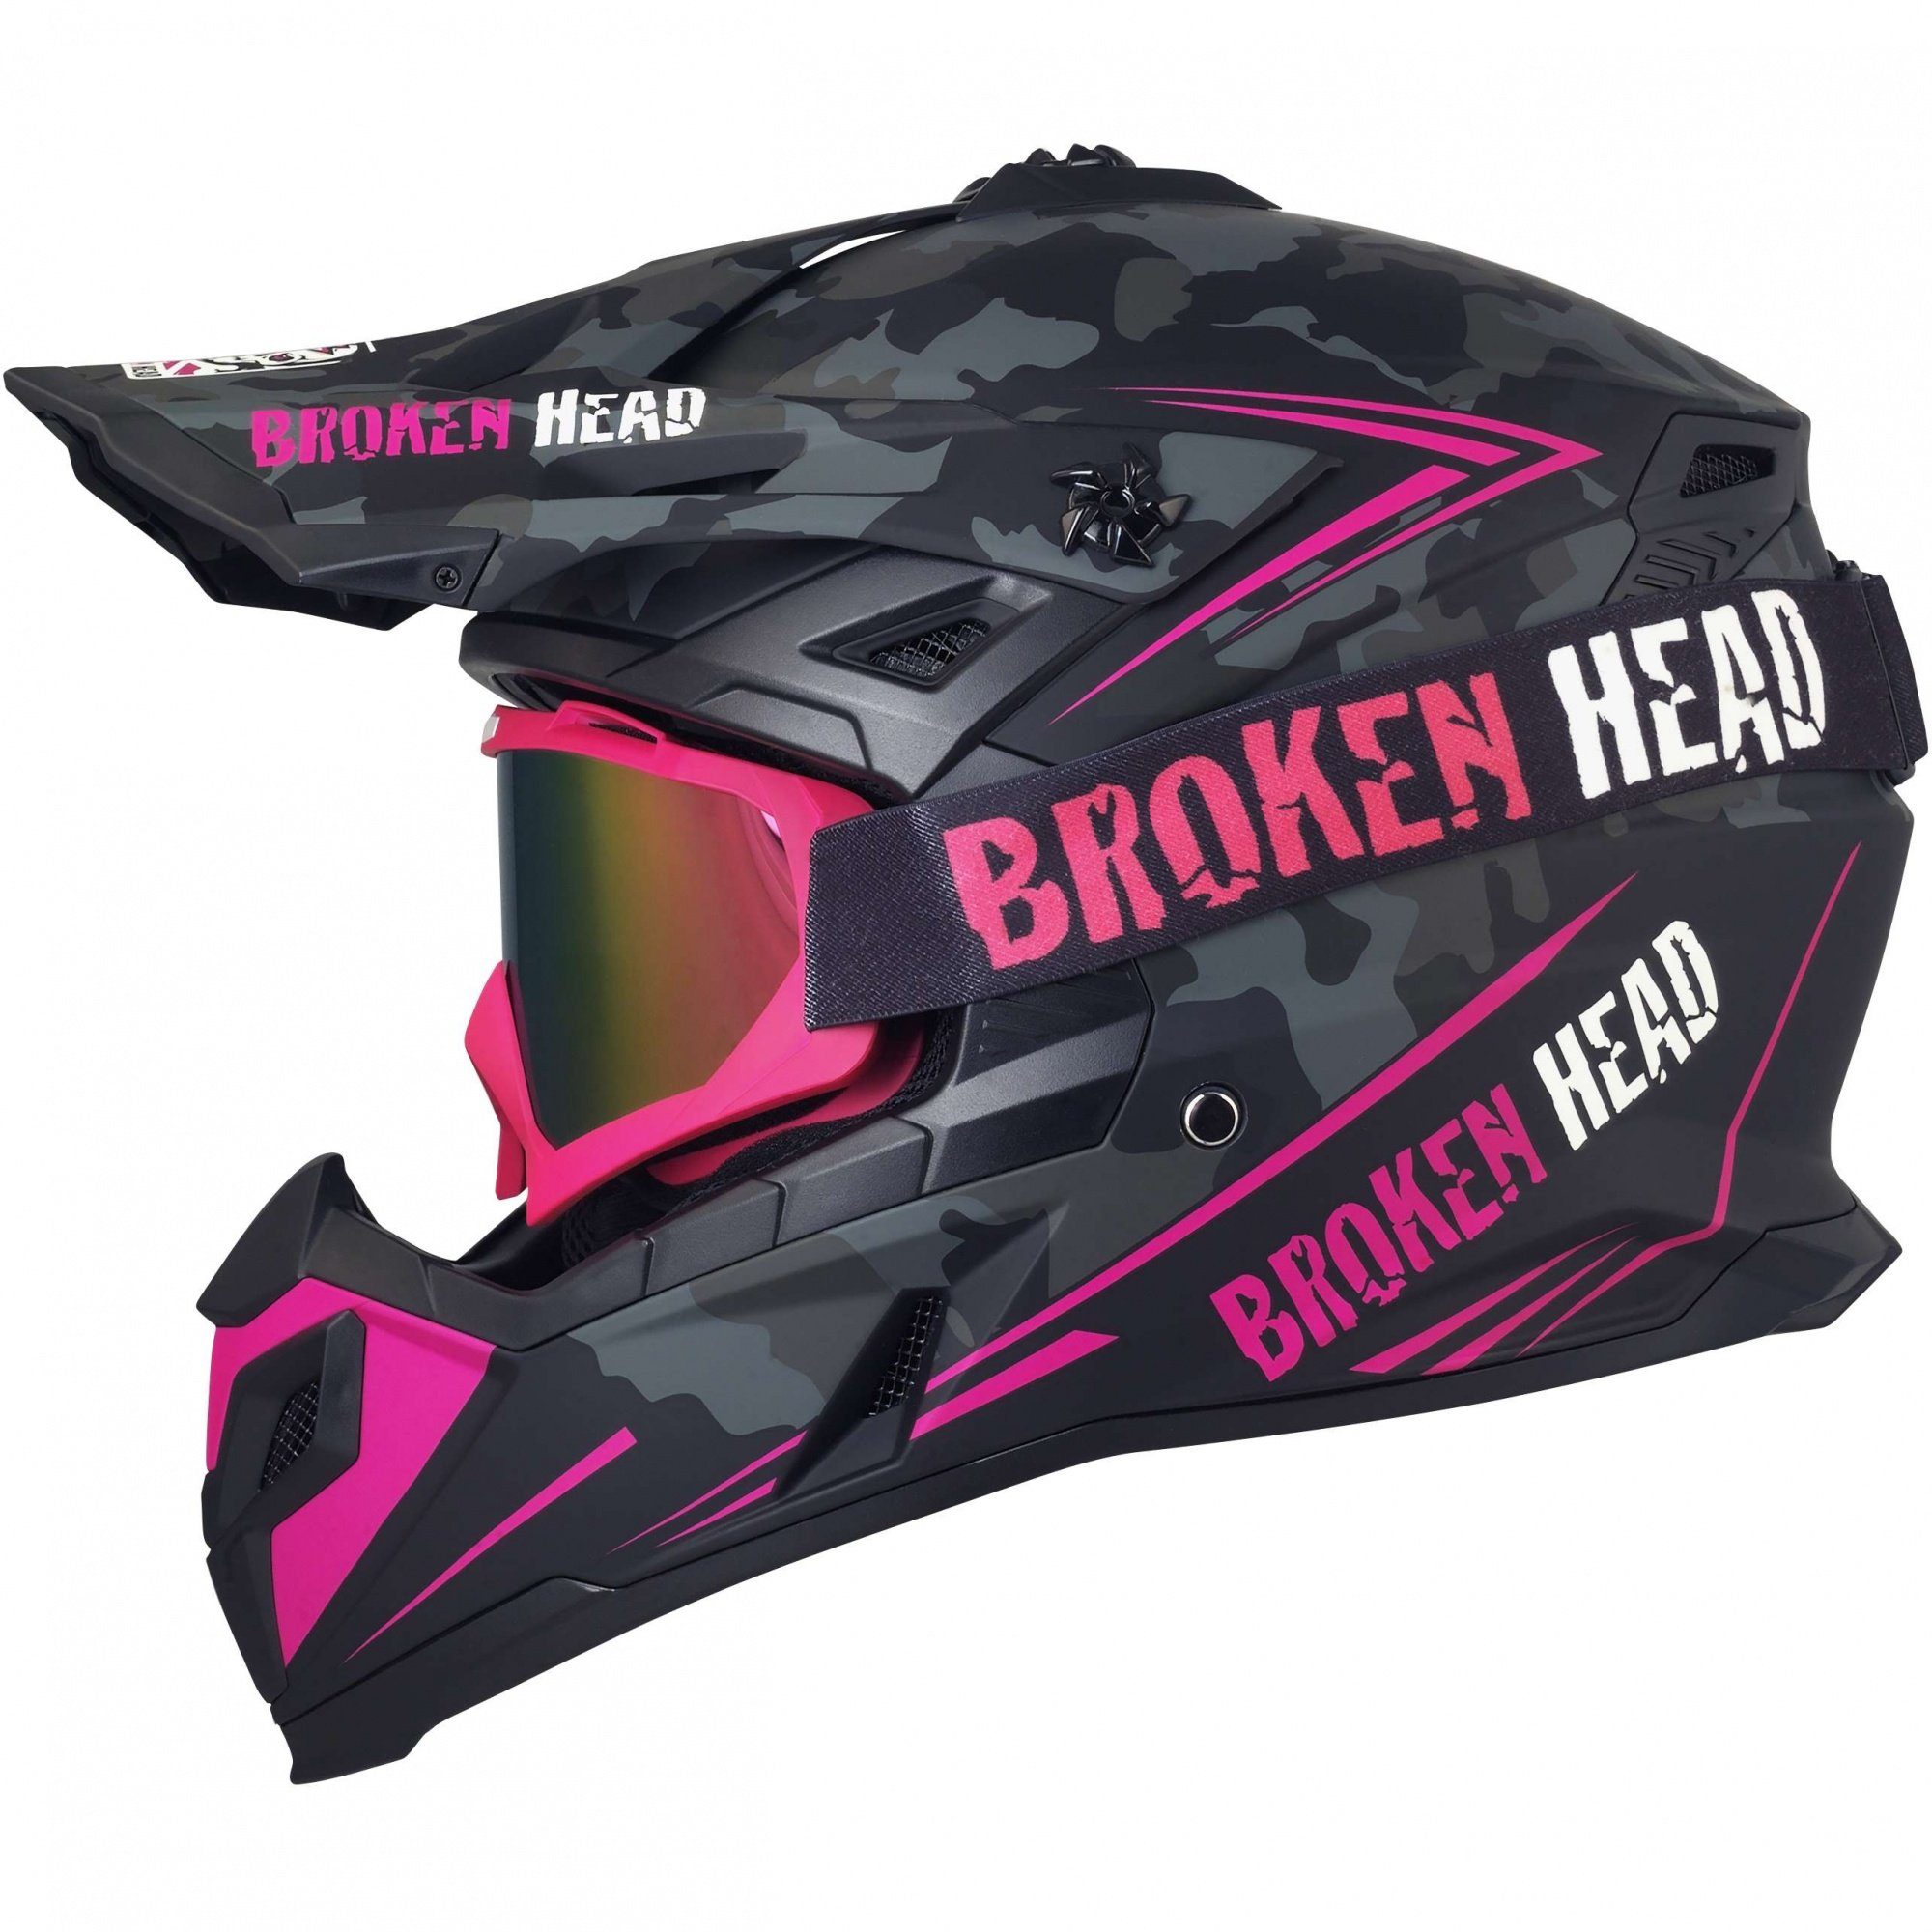 Broken Head Motocrosshelm (Mit MX-2 Brille Pink Verspiegelt), Mit Ratschen-  und Doppel-D-Verschluss